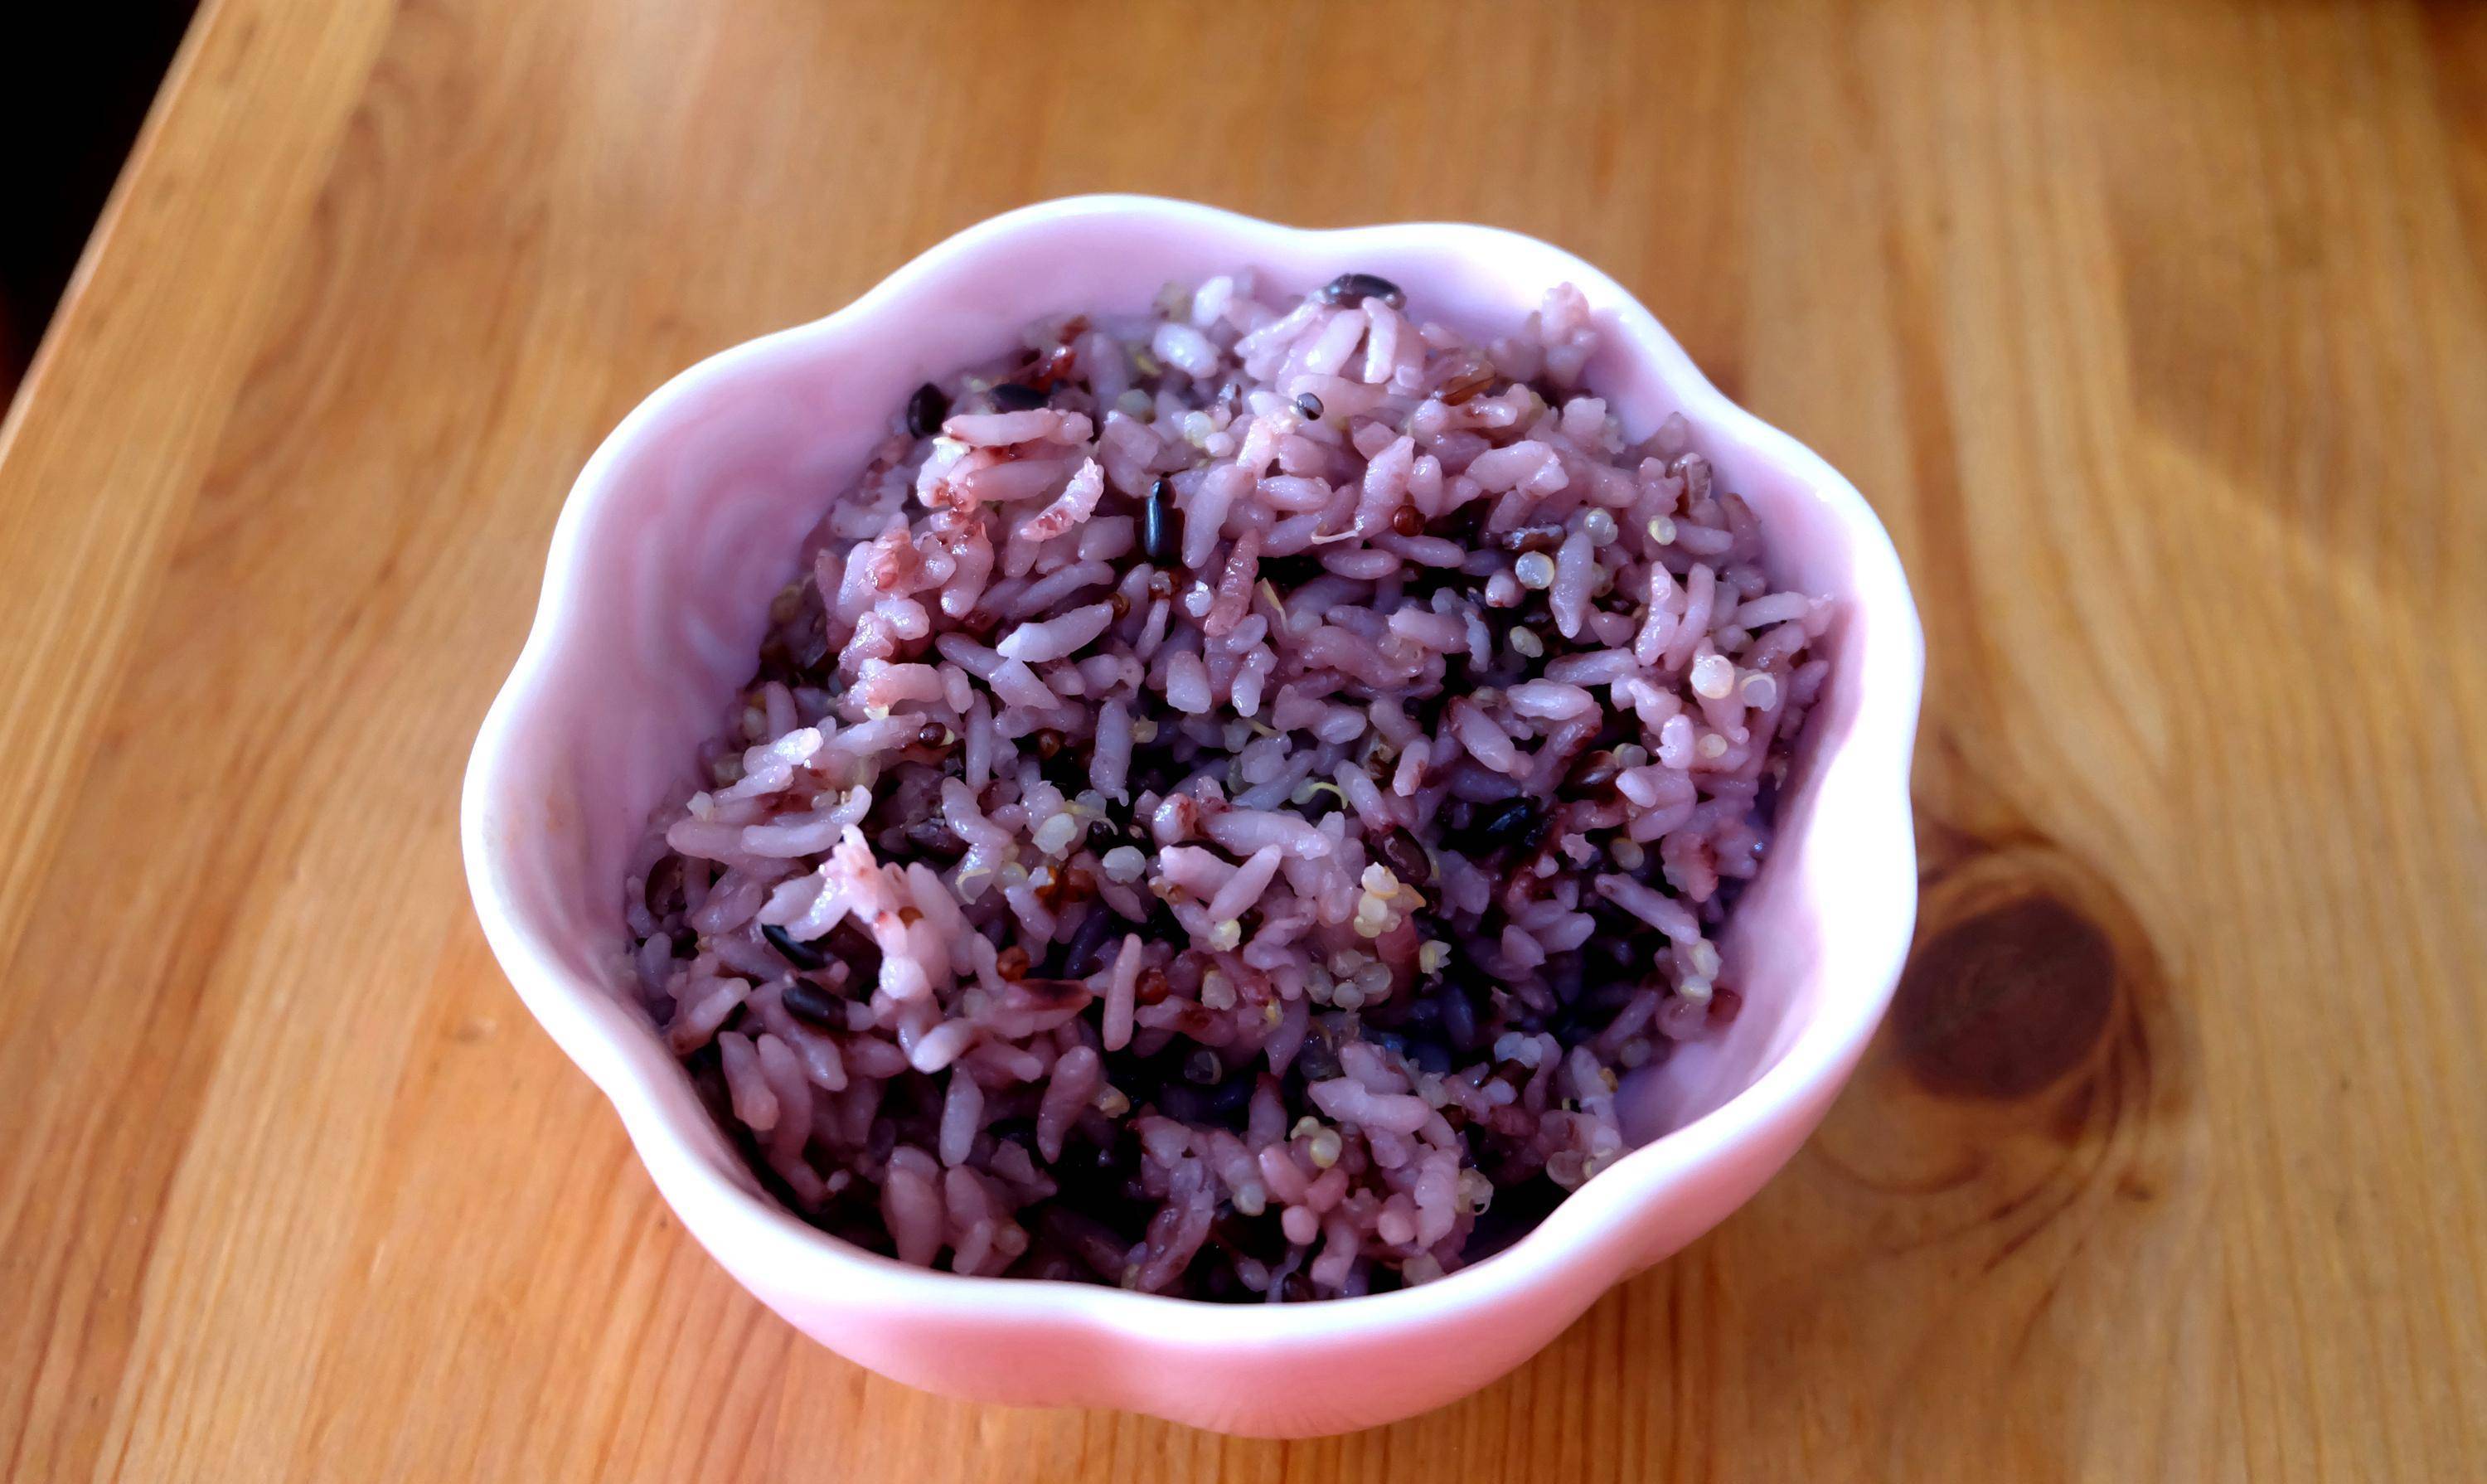 黑米藜麦米饭做法:两碗大米,一小把黑米,半碗三色藜麦,清洗干净后放进